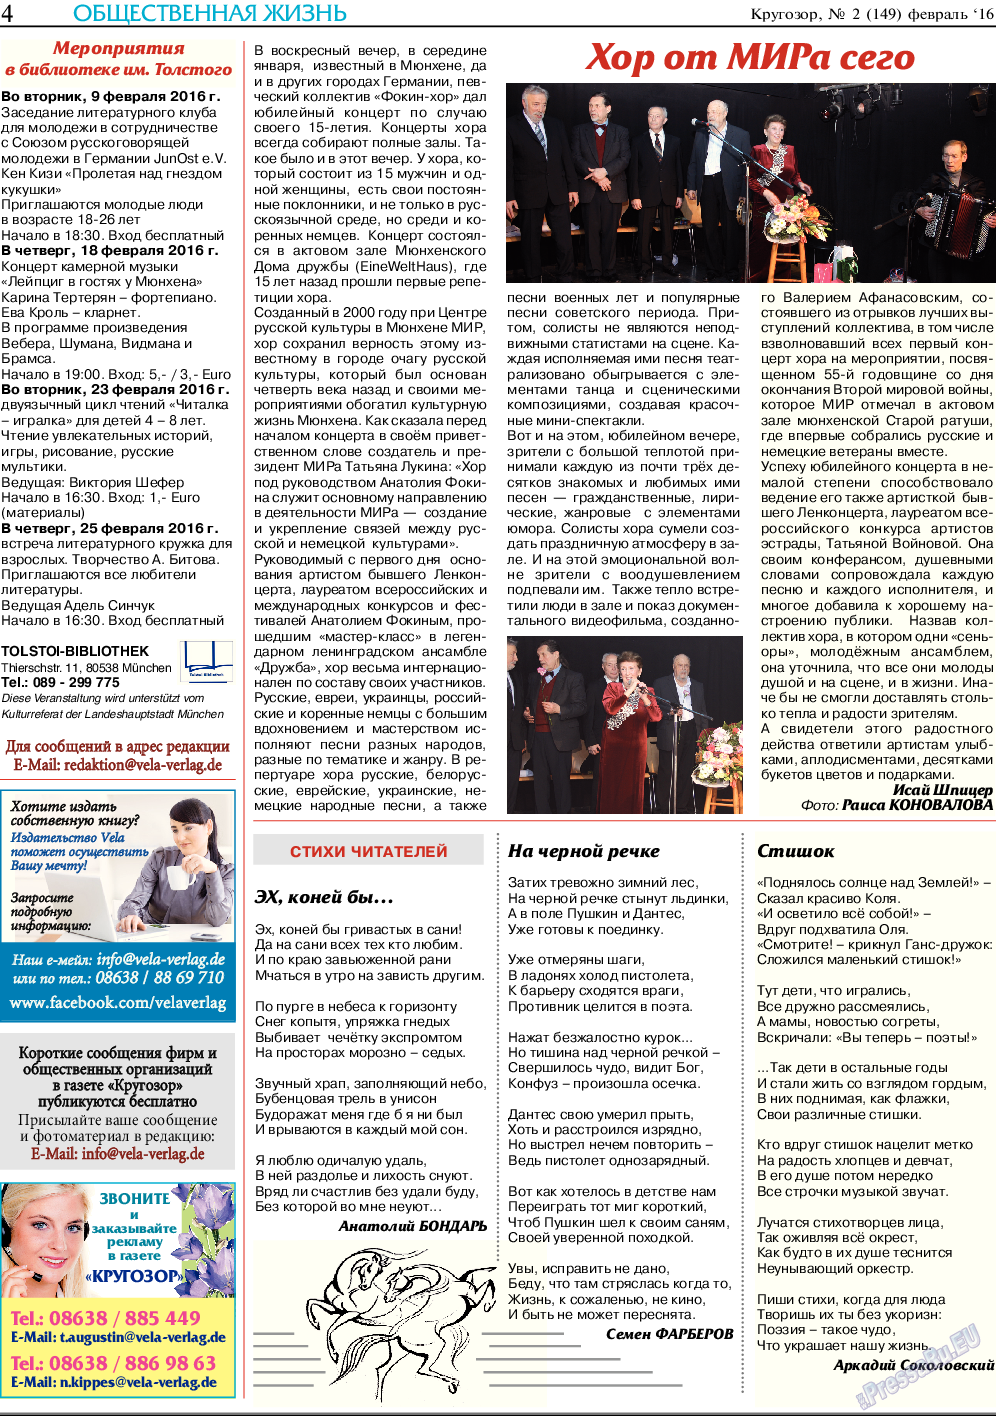 Кругозор, газета. 2016 №2 стр.4